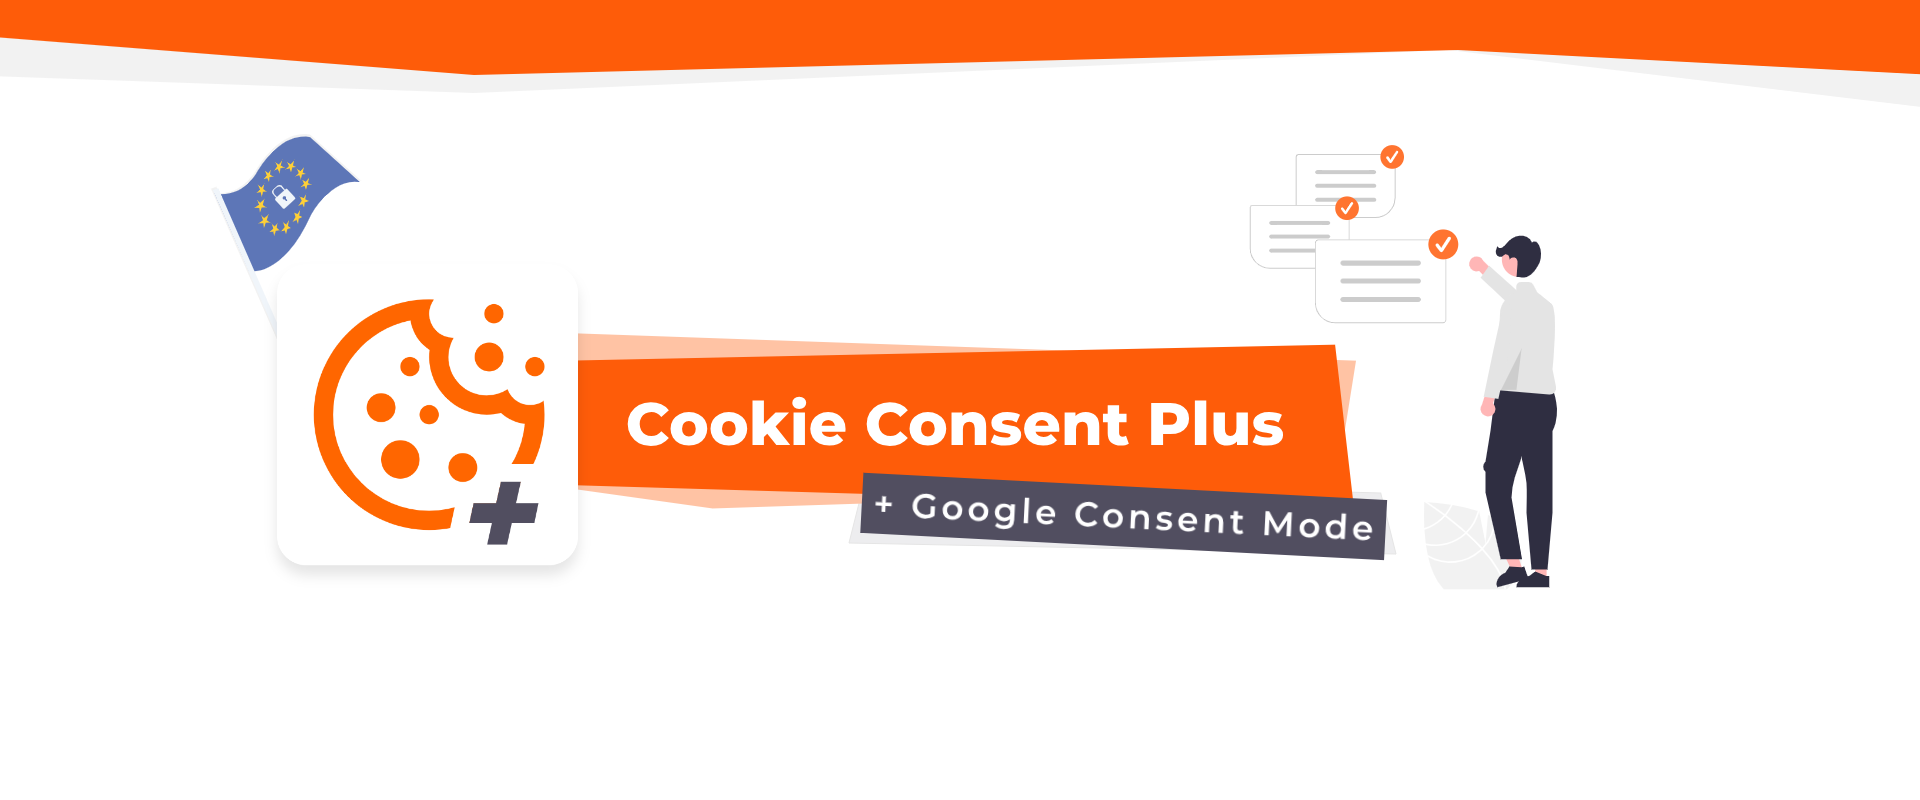 Unterstützt Cookie Consent Plus den Google Consent Mode v2?